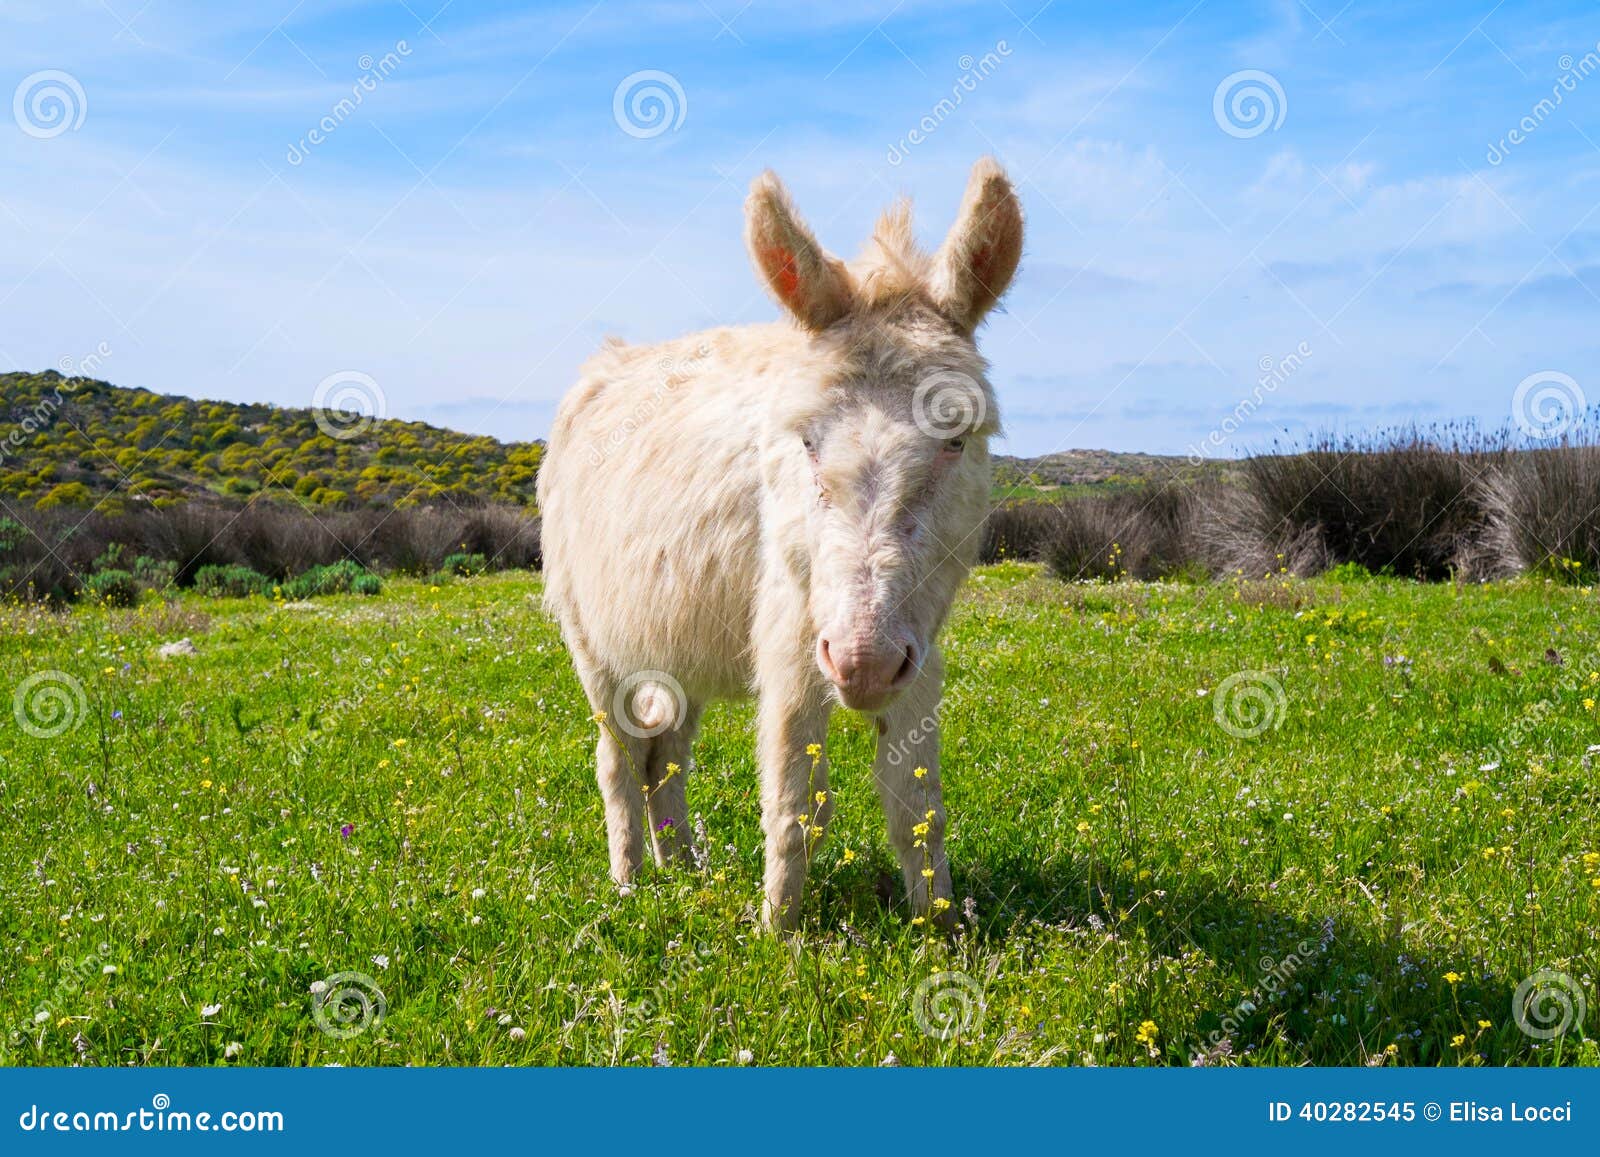 donkey in asinara island in sardinia, italy